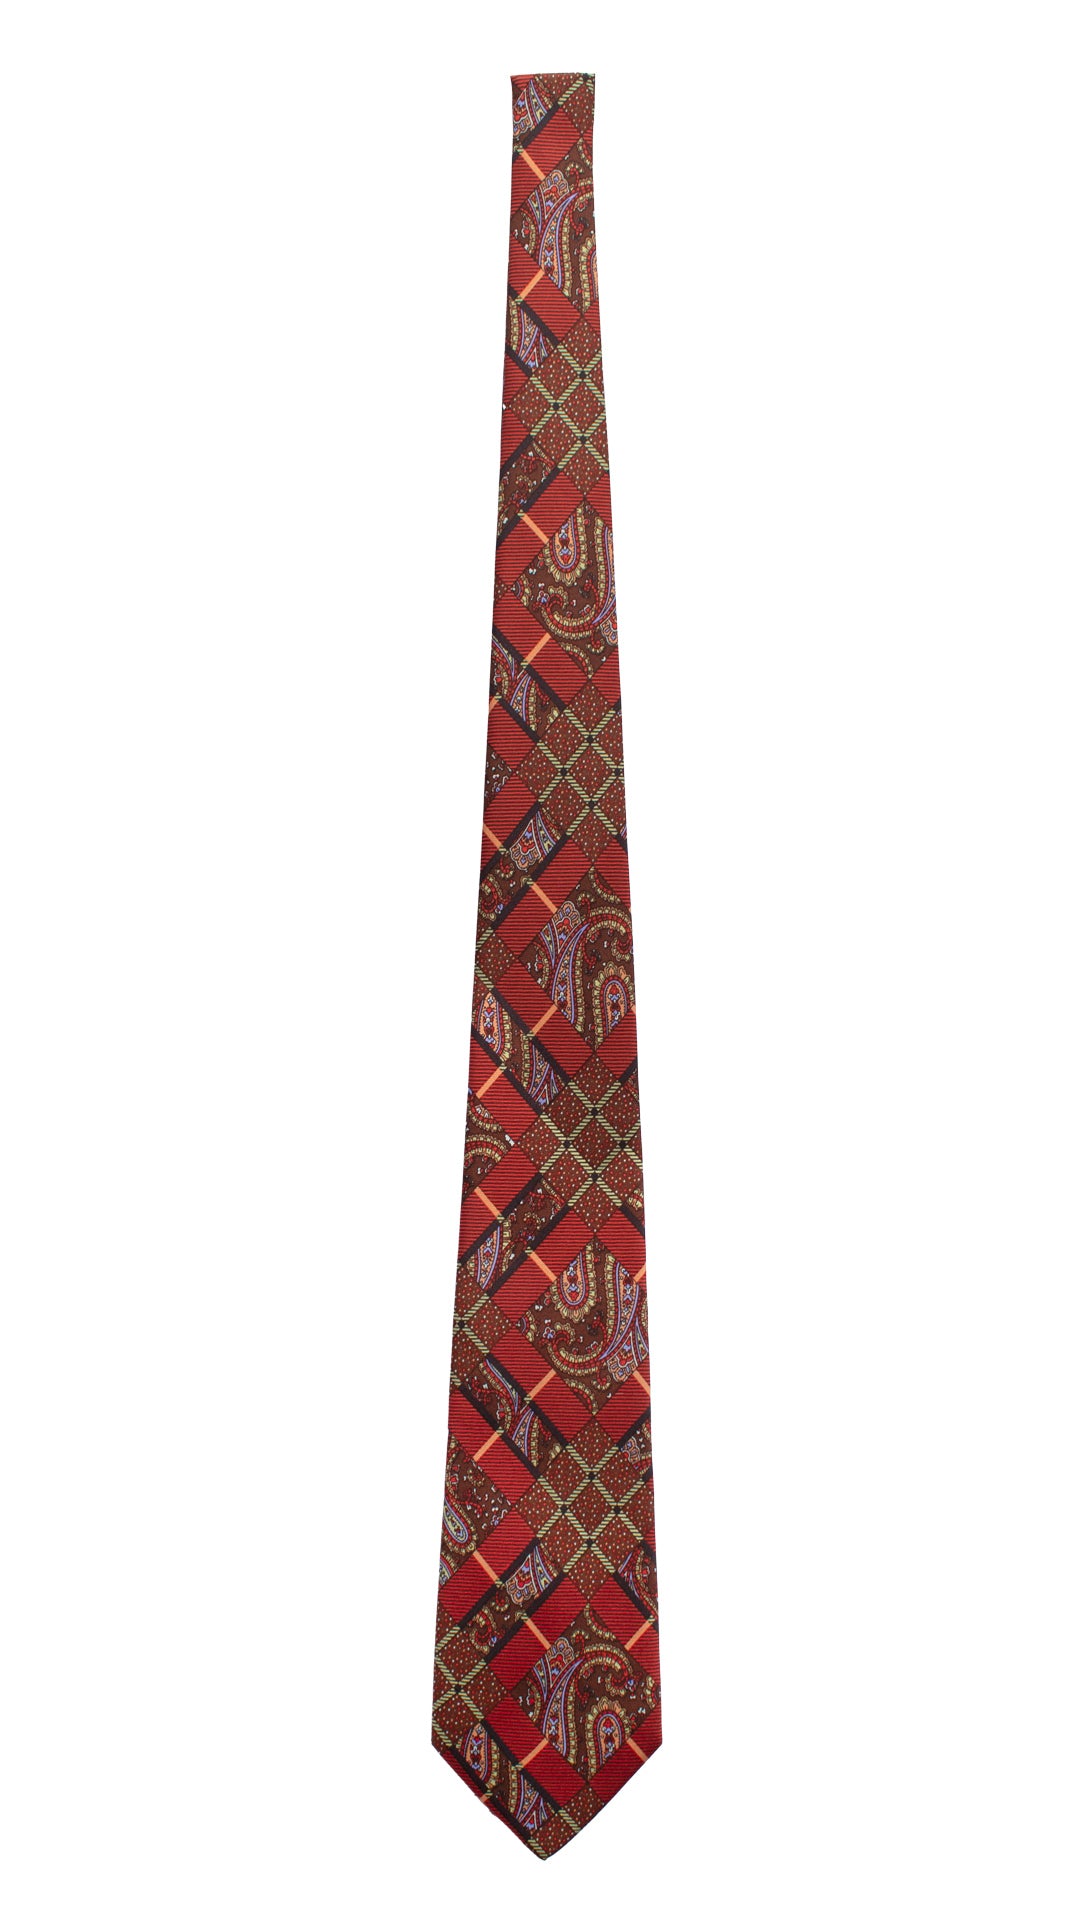 Cravatta Vintage in Twill di Seta Rossa Fantasia Multicolor CV825 Intera